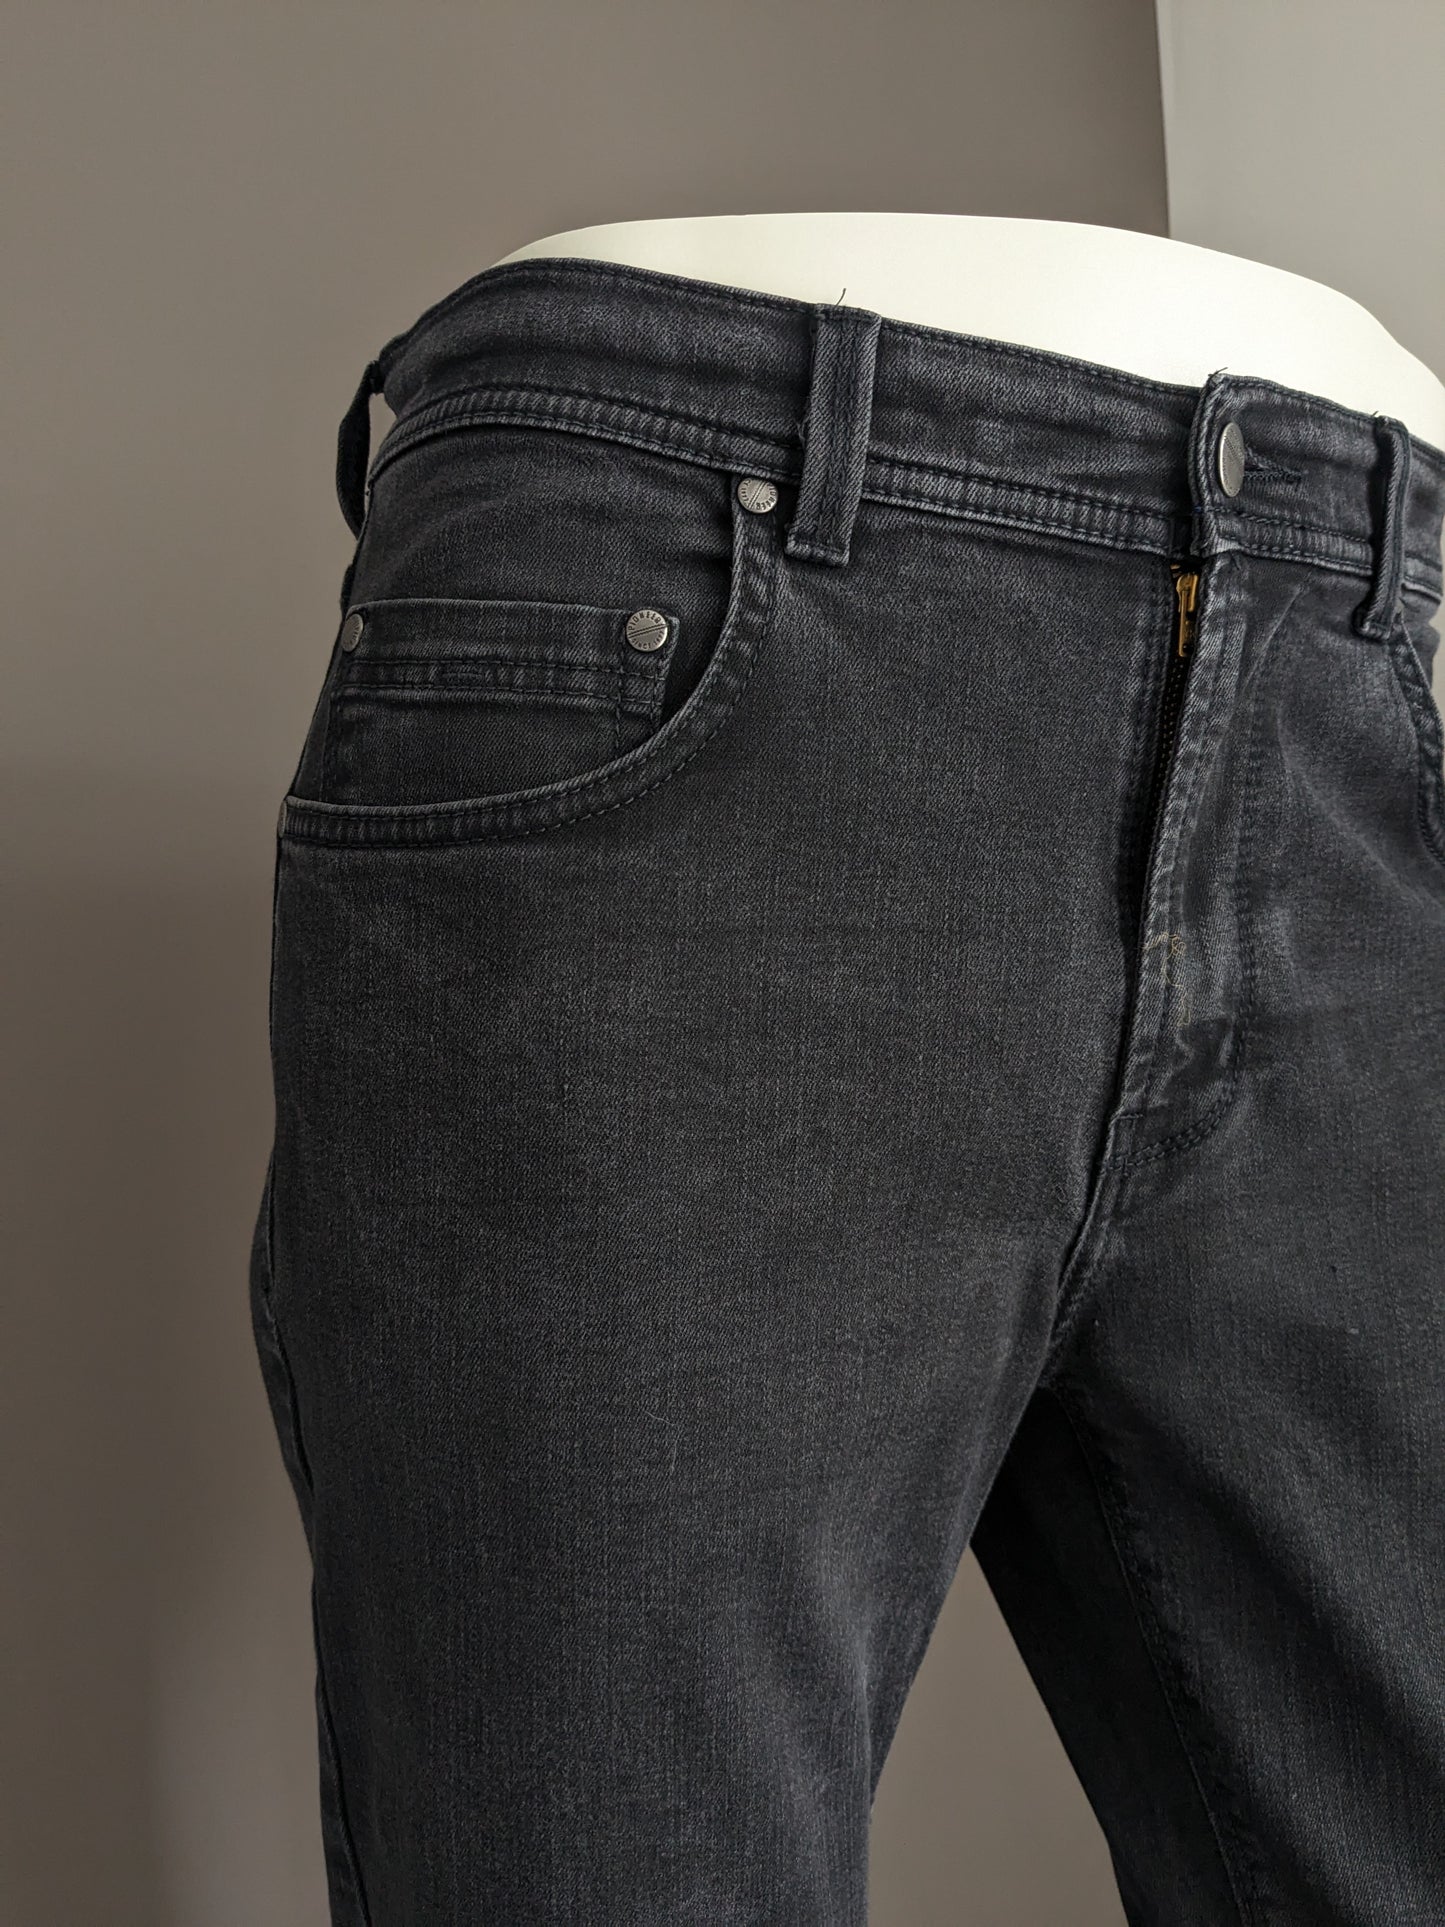 Jeans pioneros. Color negro. Escribe rando. Megaflex. Tamaño W33 - L30. (acortado)